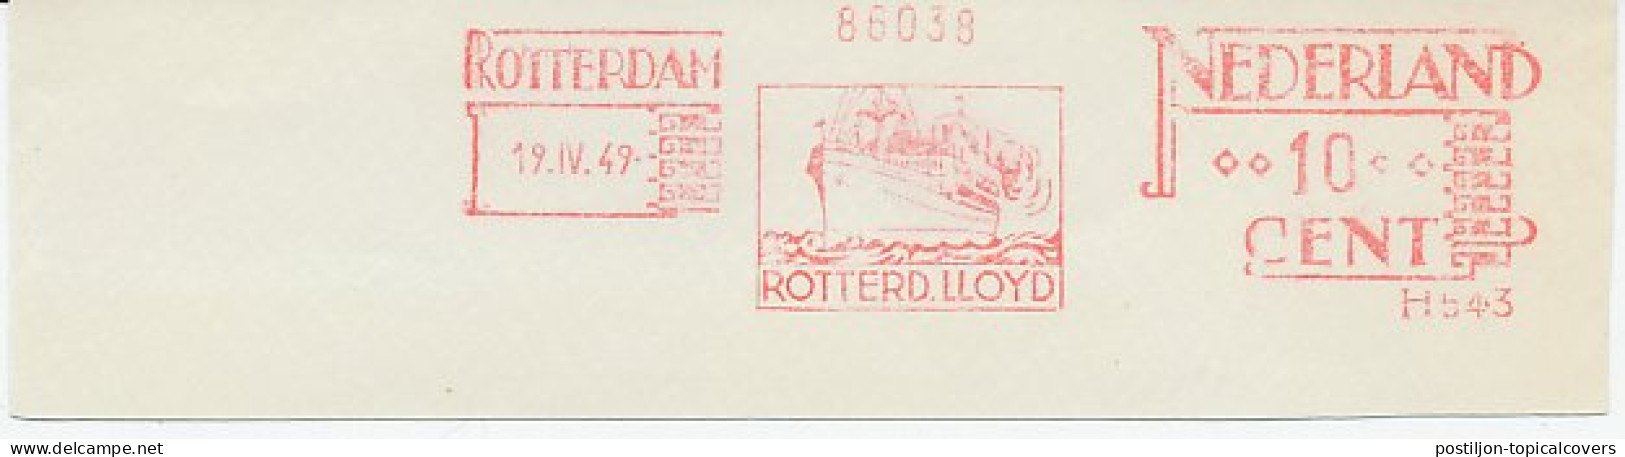 Meter Cut Netherlands 1949 Ocean Liner - Rotterdamsche Lloyd - Bateaux